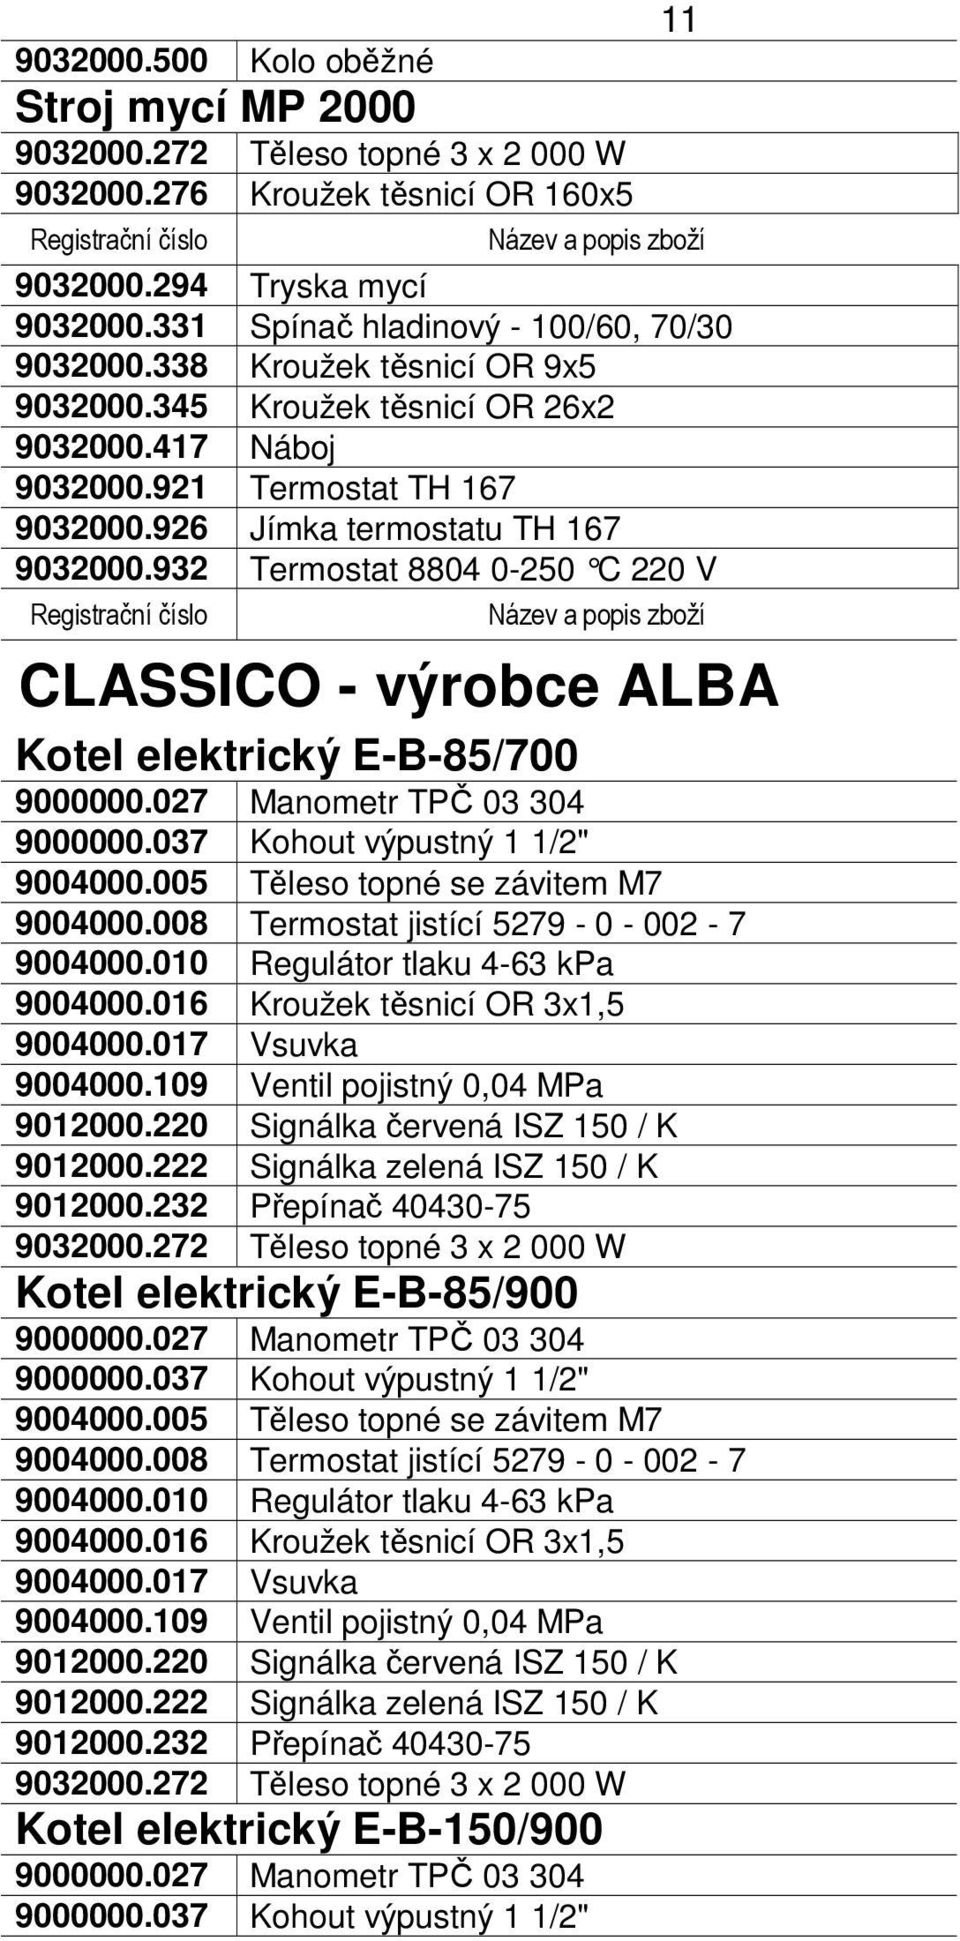 932 Termostat 8804 0-250 C 220 V Registrační číslo CLASSICO - výrobce ALBA Kotel elektrický E-B-85/700 9000000.027 Manometr TPČ 03 304 9000000.037 Kohout výpustný 1 1/2" 9004000.